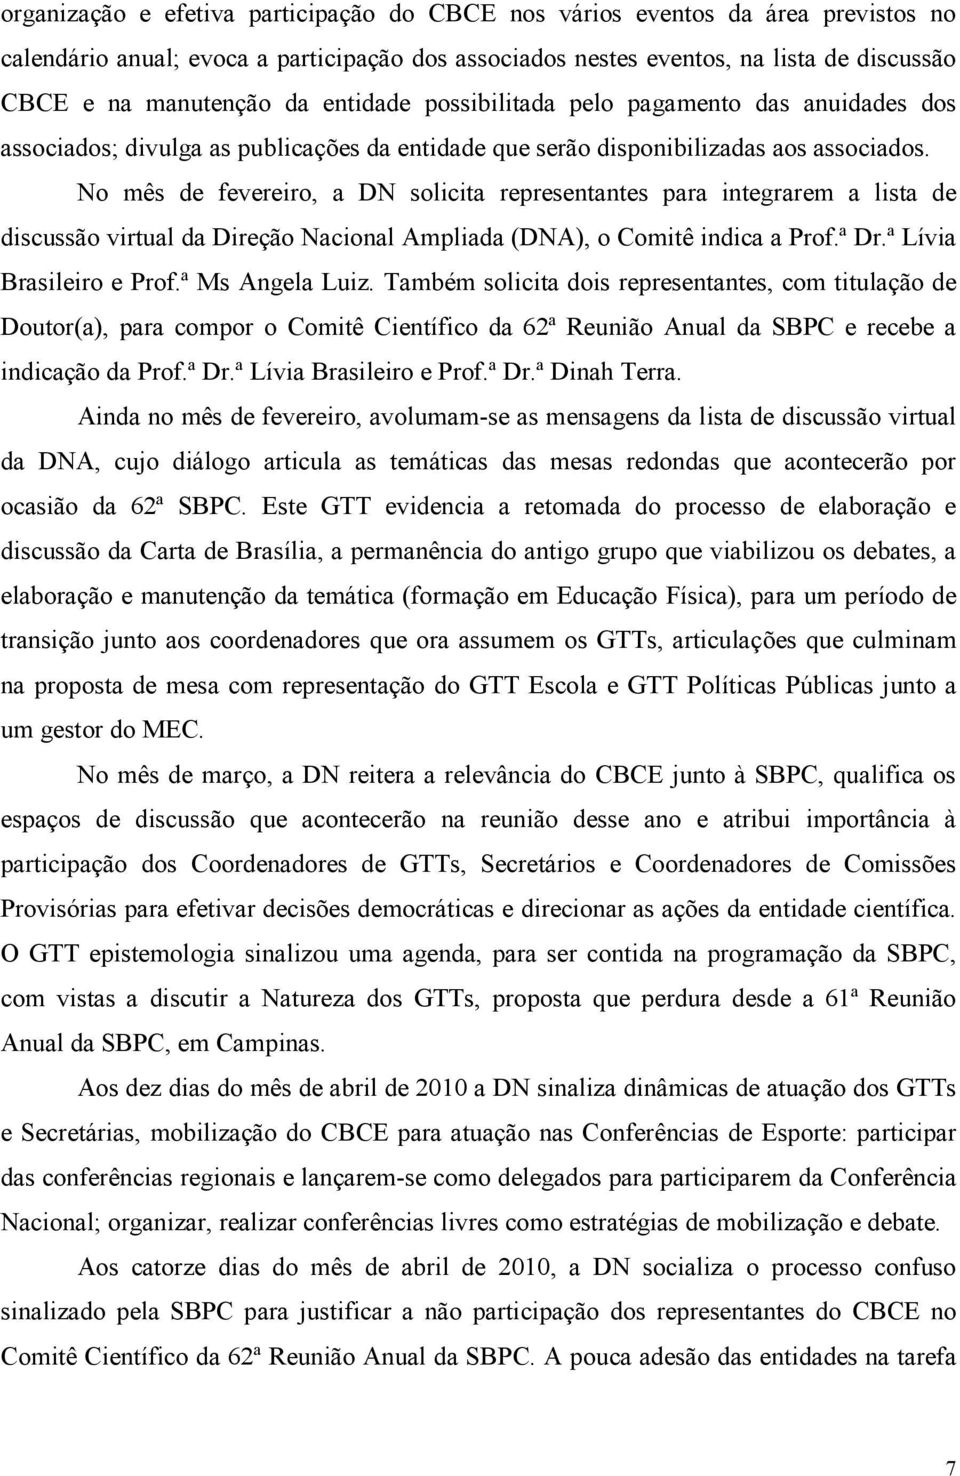 No mês de fevereiro, a DN solicita representantes para integrarem a lista de discussão virtual da Direção Nacional Ampliada (DNA), o Comitê indica a Prof.ª Dr.ª Lívia Brasileiro e Prof.